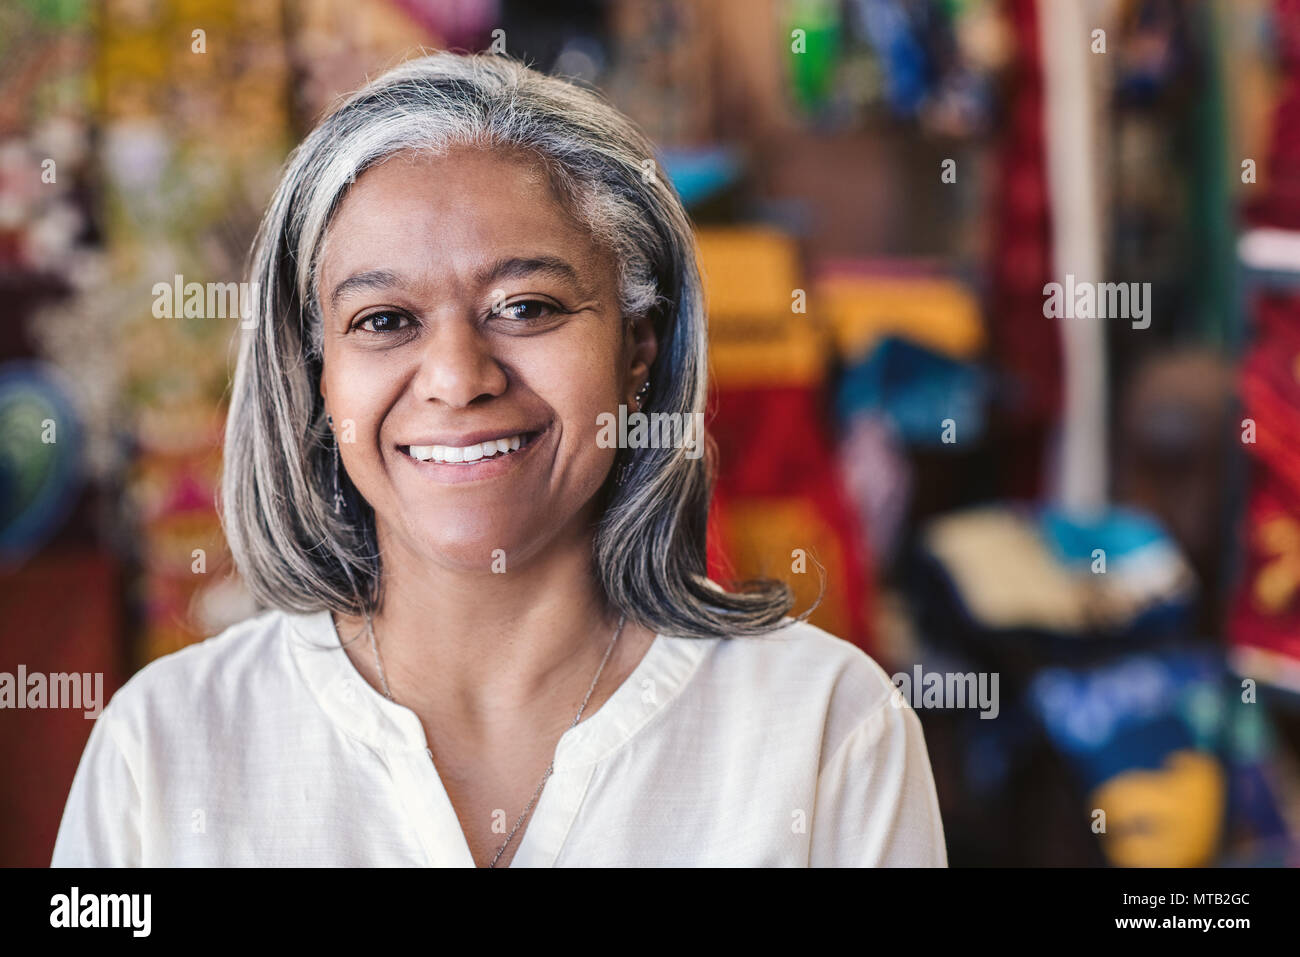 Retrato de un sonriente maduro propietario de una tienda de tela de pie en su tienda con coloridas telas y textiles en estanterías en el fondo Foto de stock